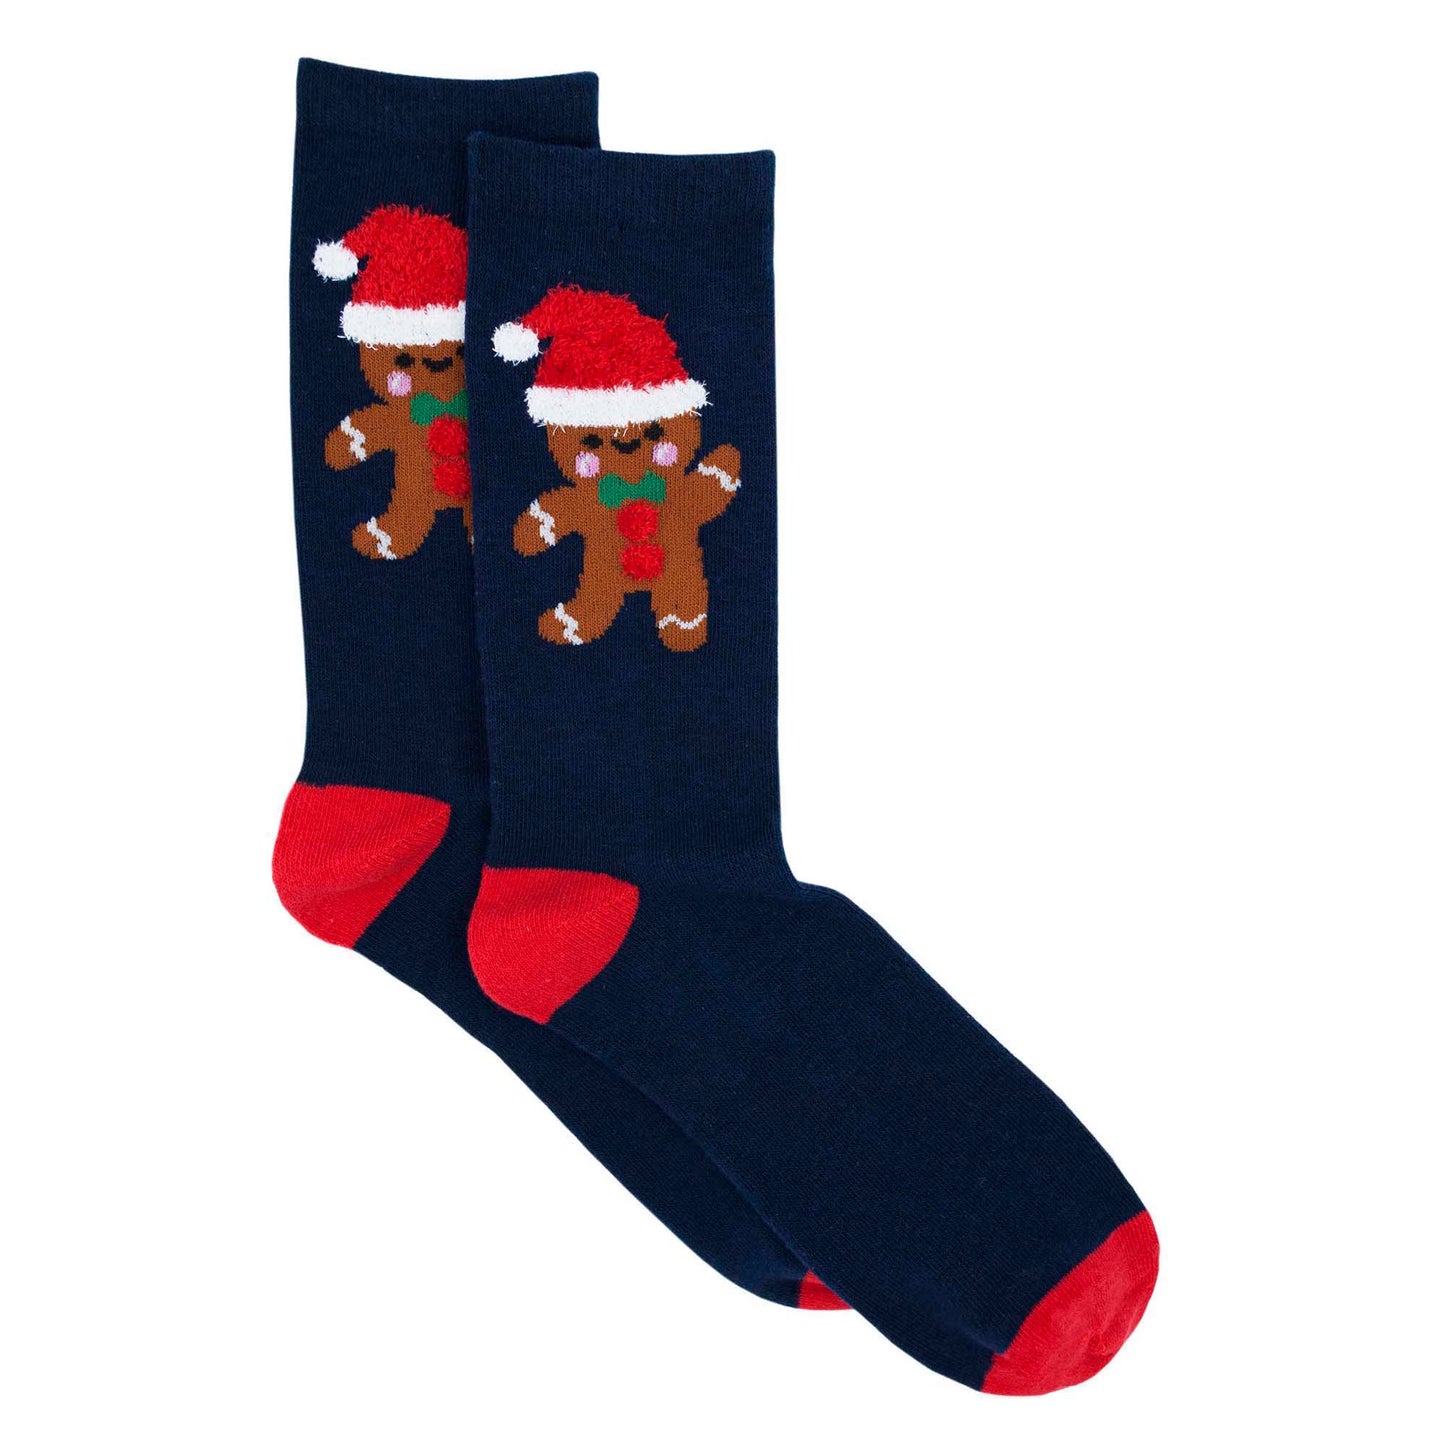 Men's Christmas Novelty 12 Pack Cotton Socks Uk 7-11 Eur 41-46